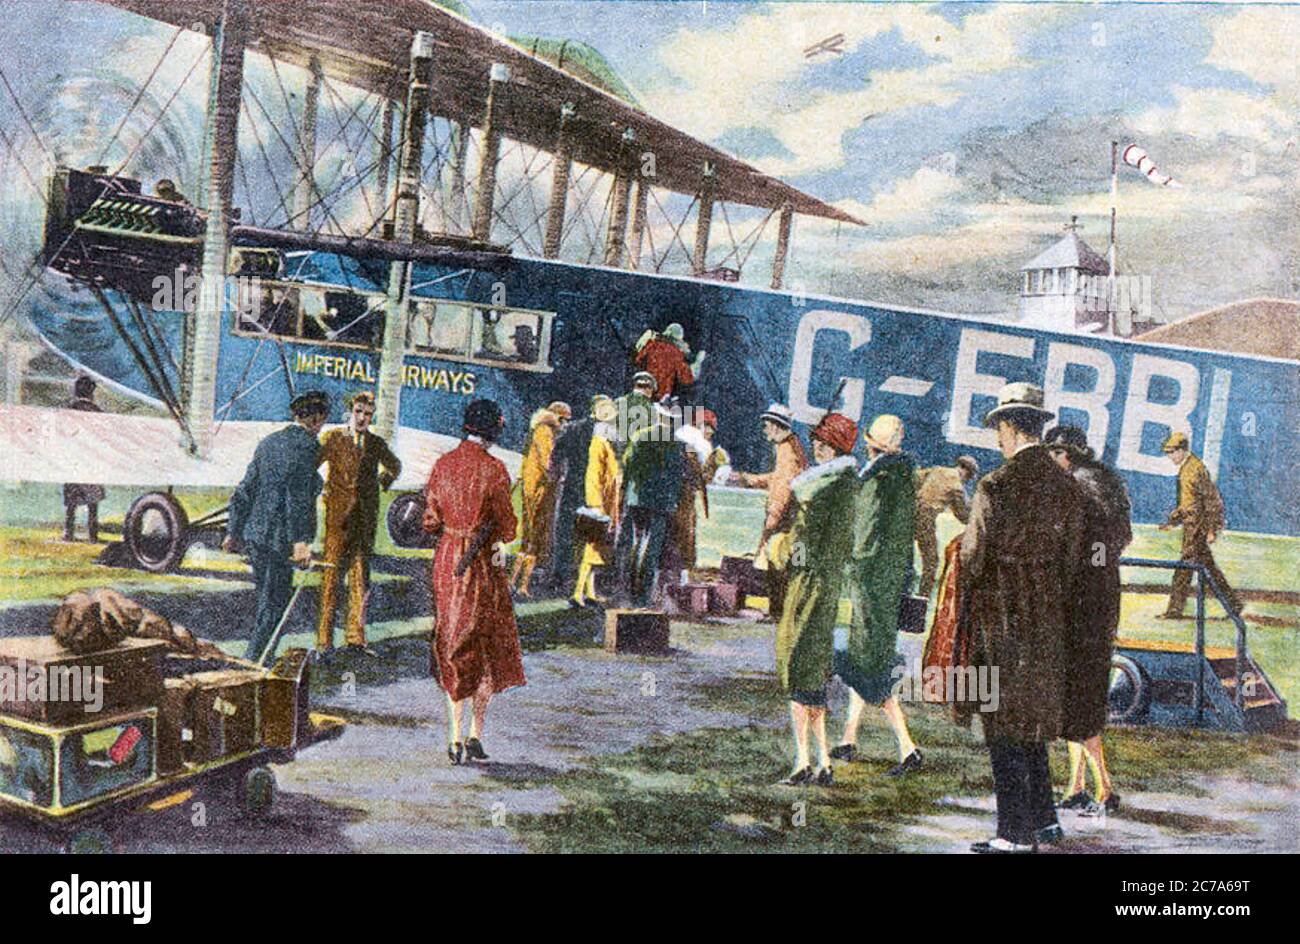 IMPERIAL AIRWAYS Passagiere, die eine Handley Page W.8b mit dem Namen 'Prince Henry' am Flughafen Croydon um 1930 besteigen. Stockfoto